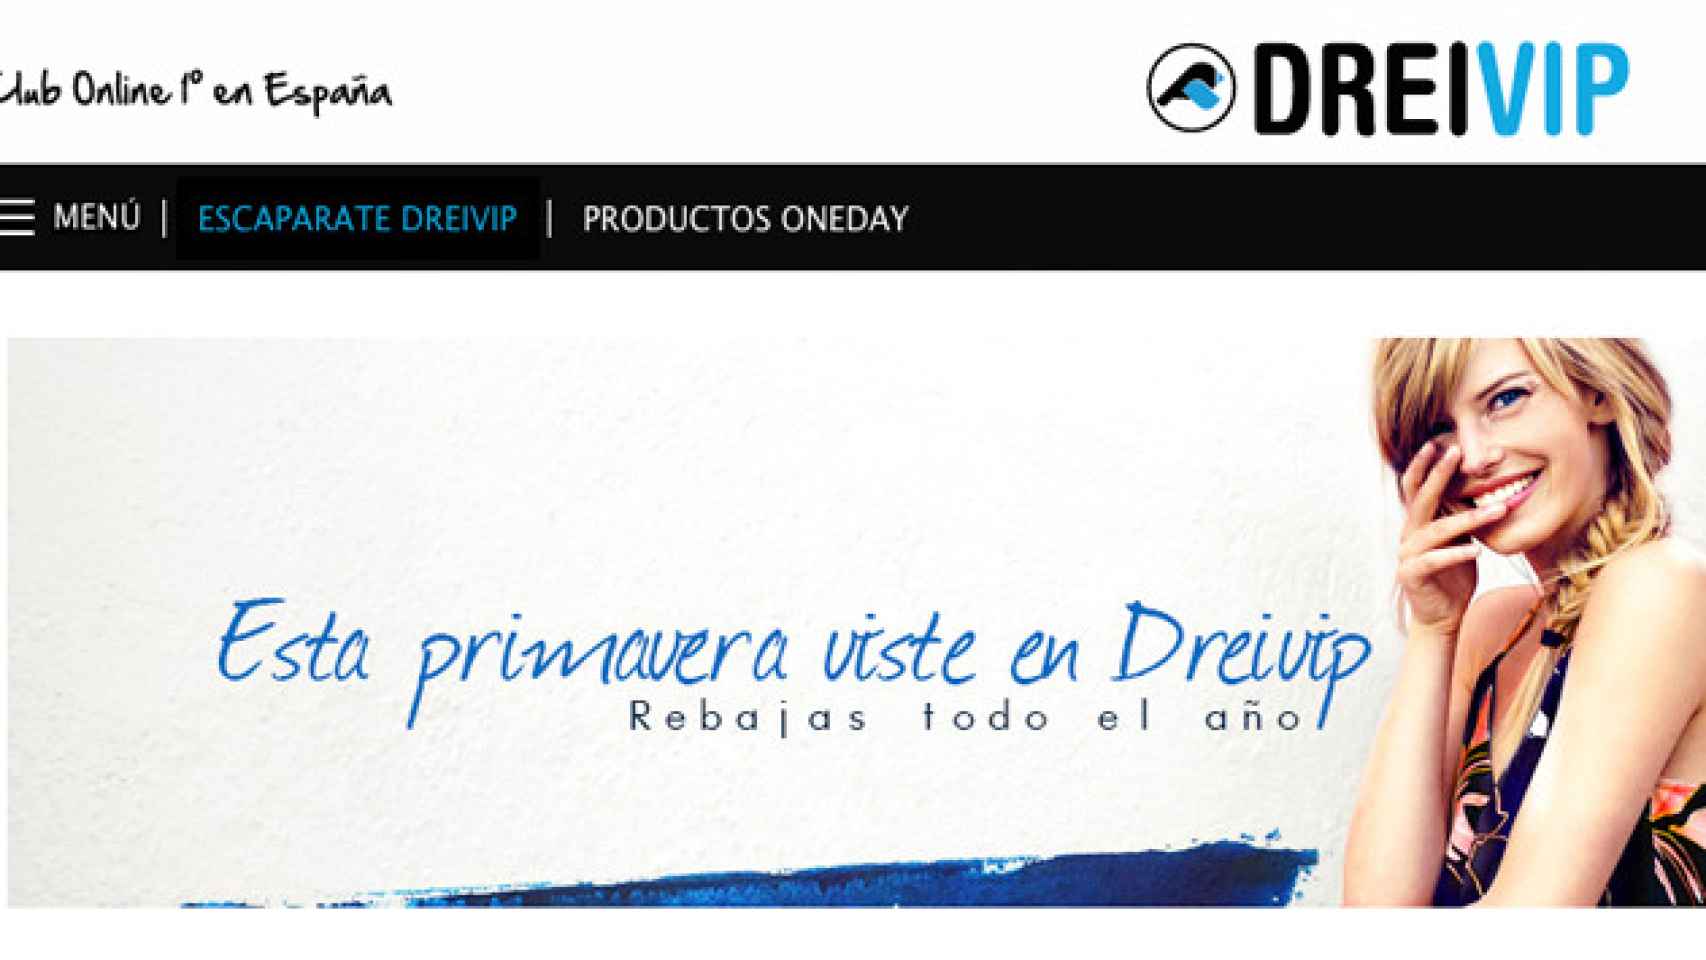 Página de inicio de la web Dreivip.com / CG